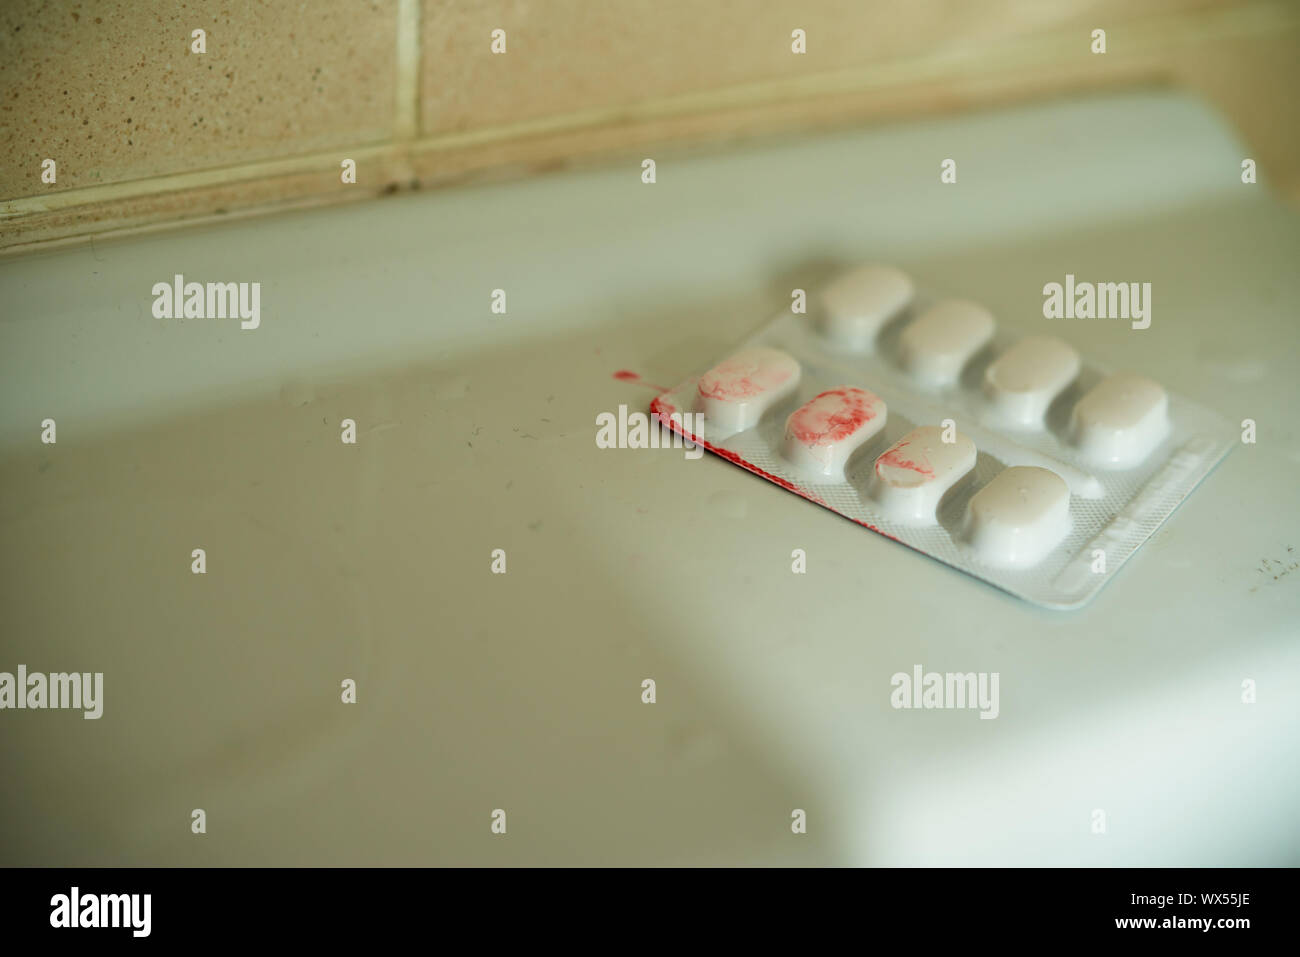 Un paquet de pilules blister blanc sur le côté d'un évier, recouverts d'une substance de type sanguin. Banque D'Images